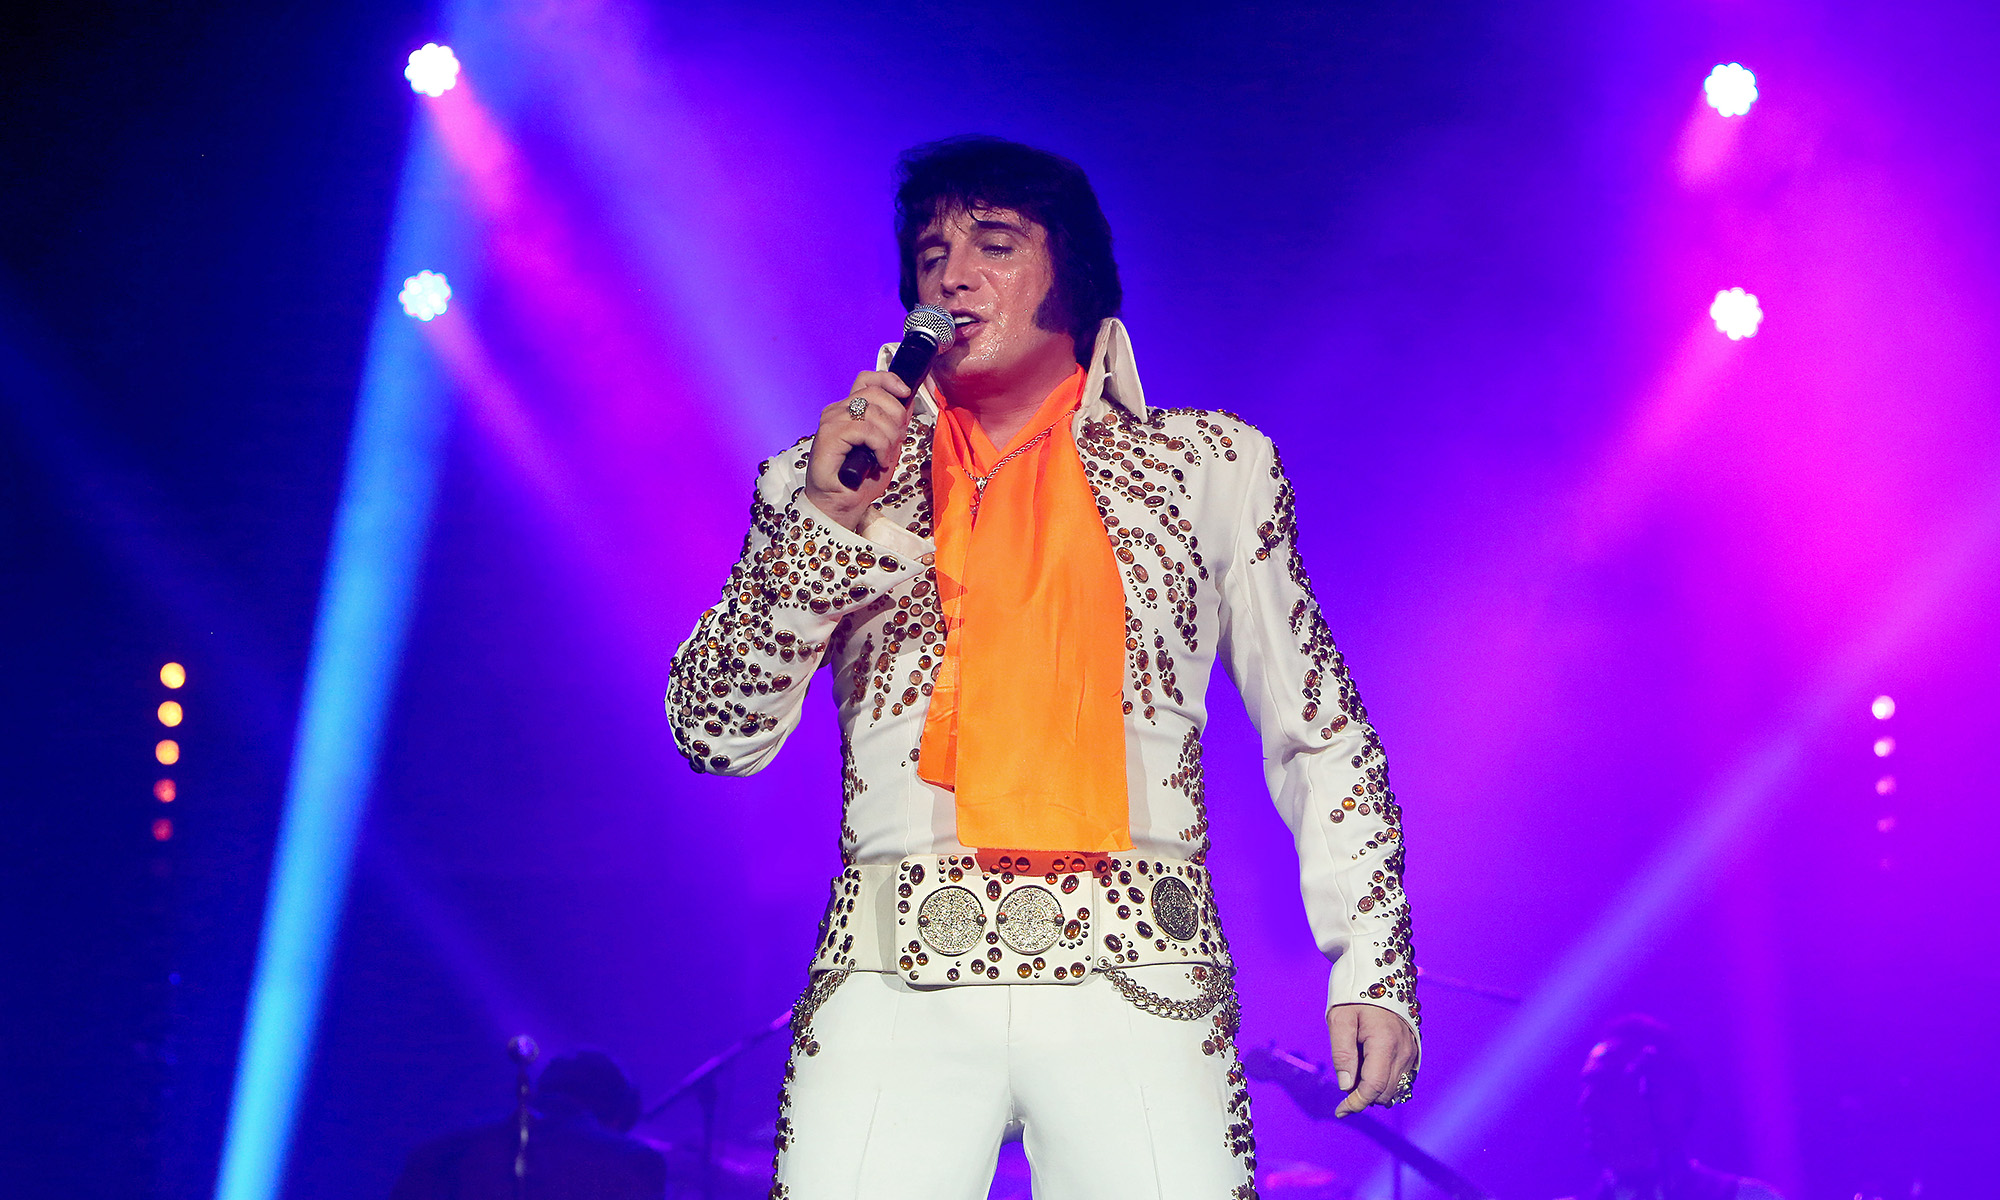 Ein Sänger der "Elvis Tribute Artist World Tour" singt Lieder von Elvis Presley